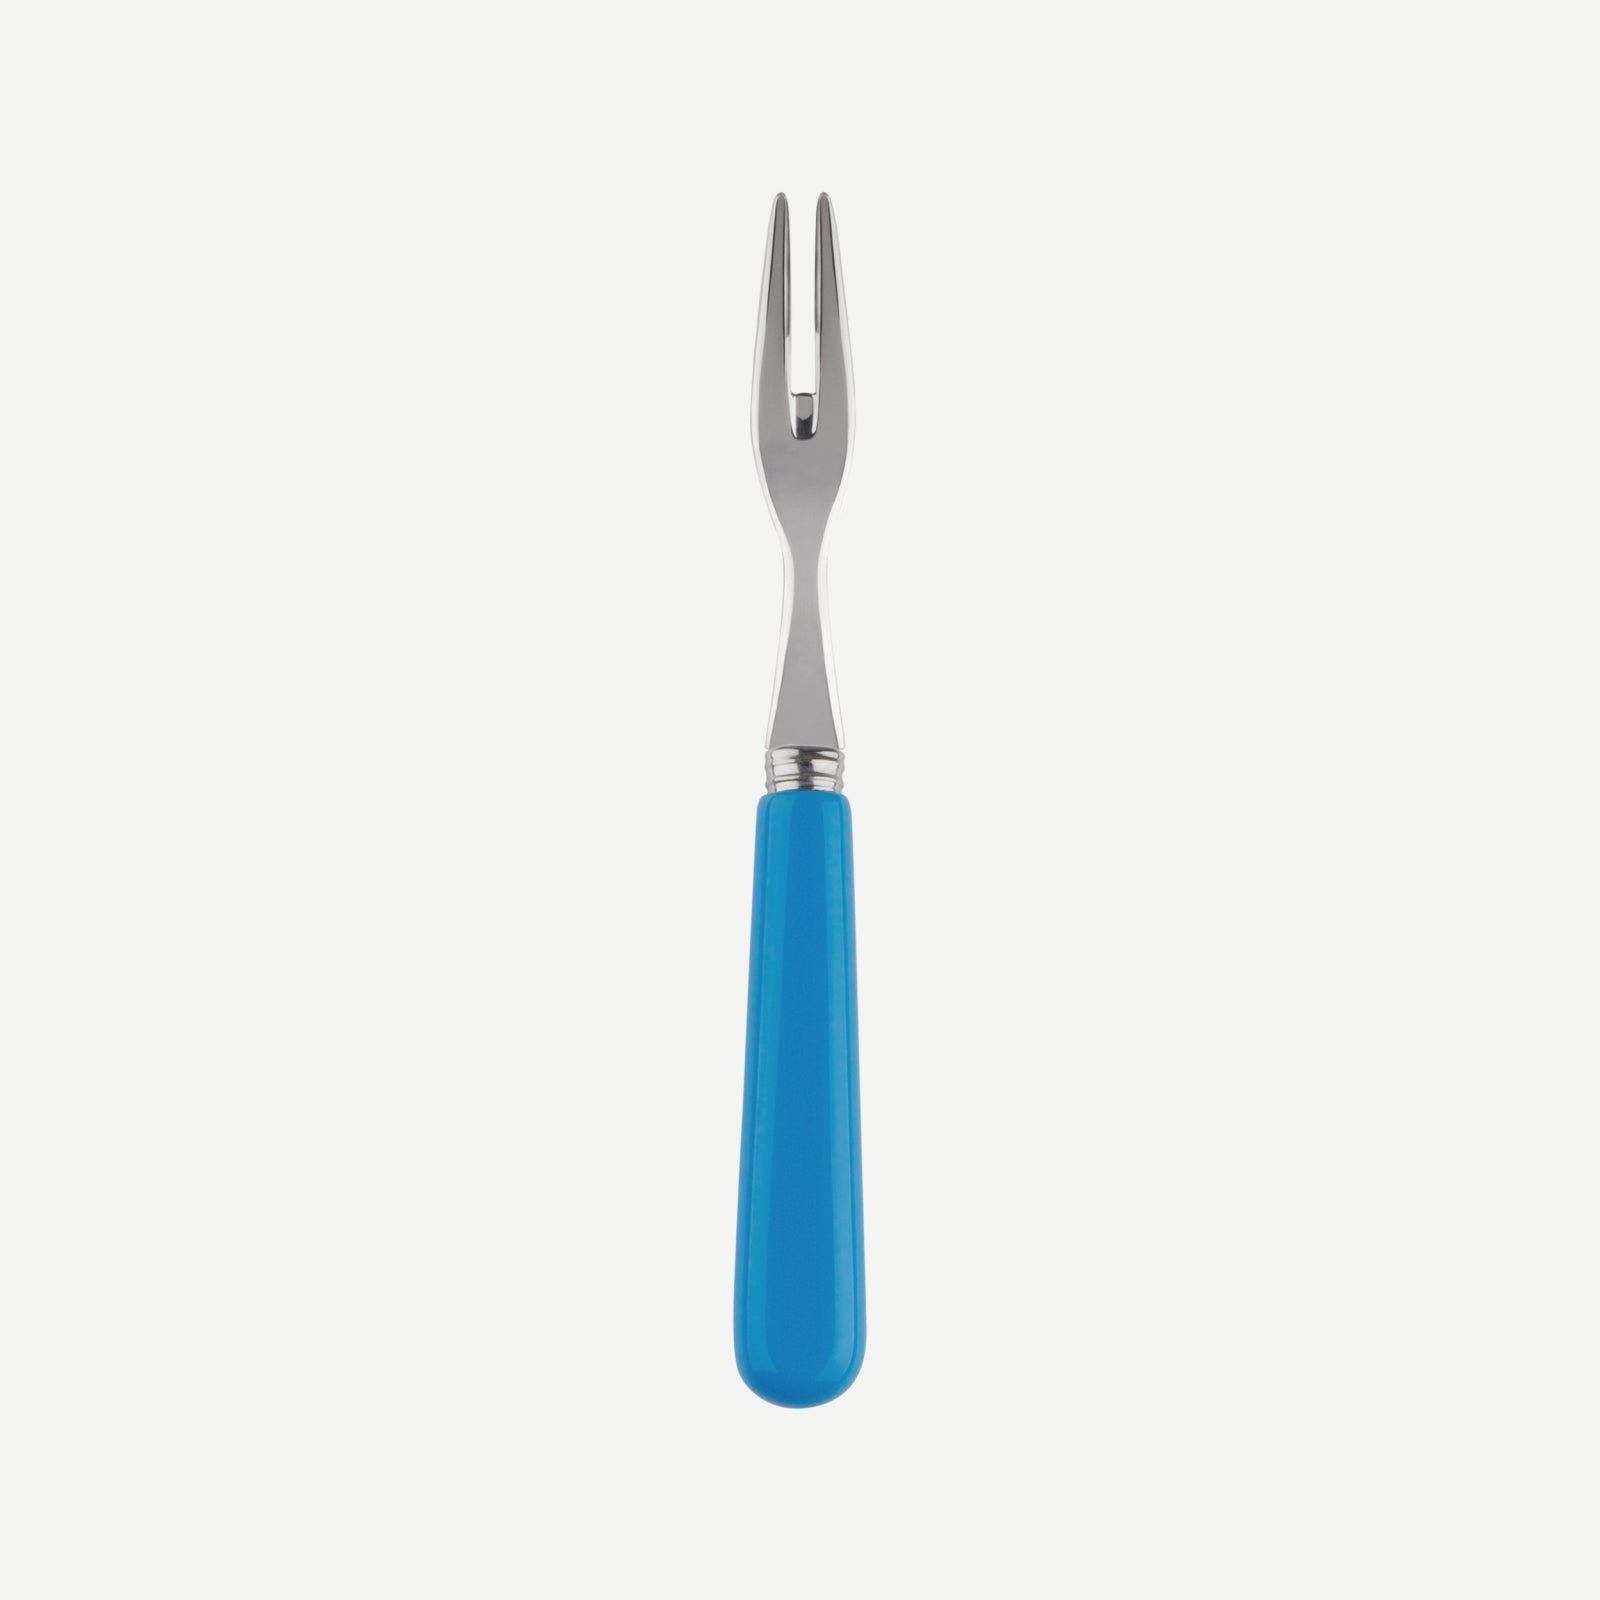 Cocktail fork - Pop unis - Cerulean blue